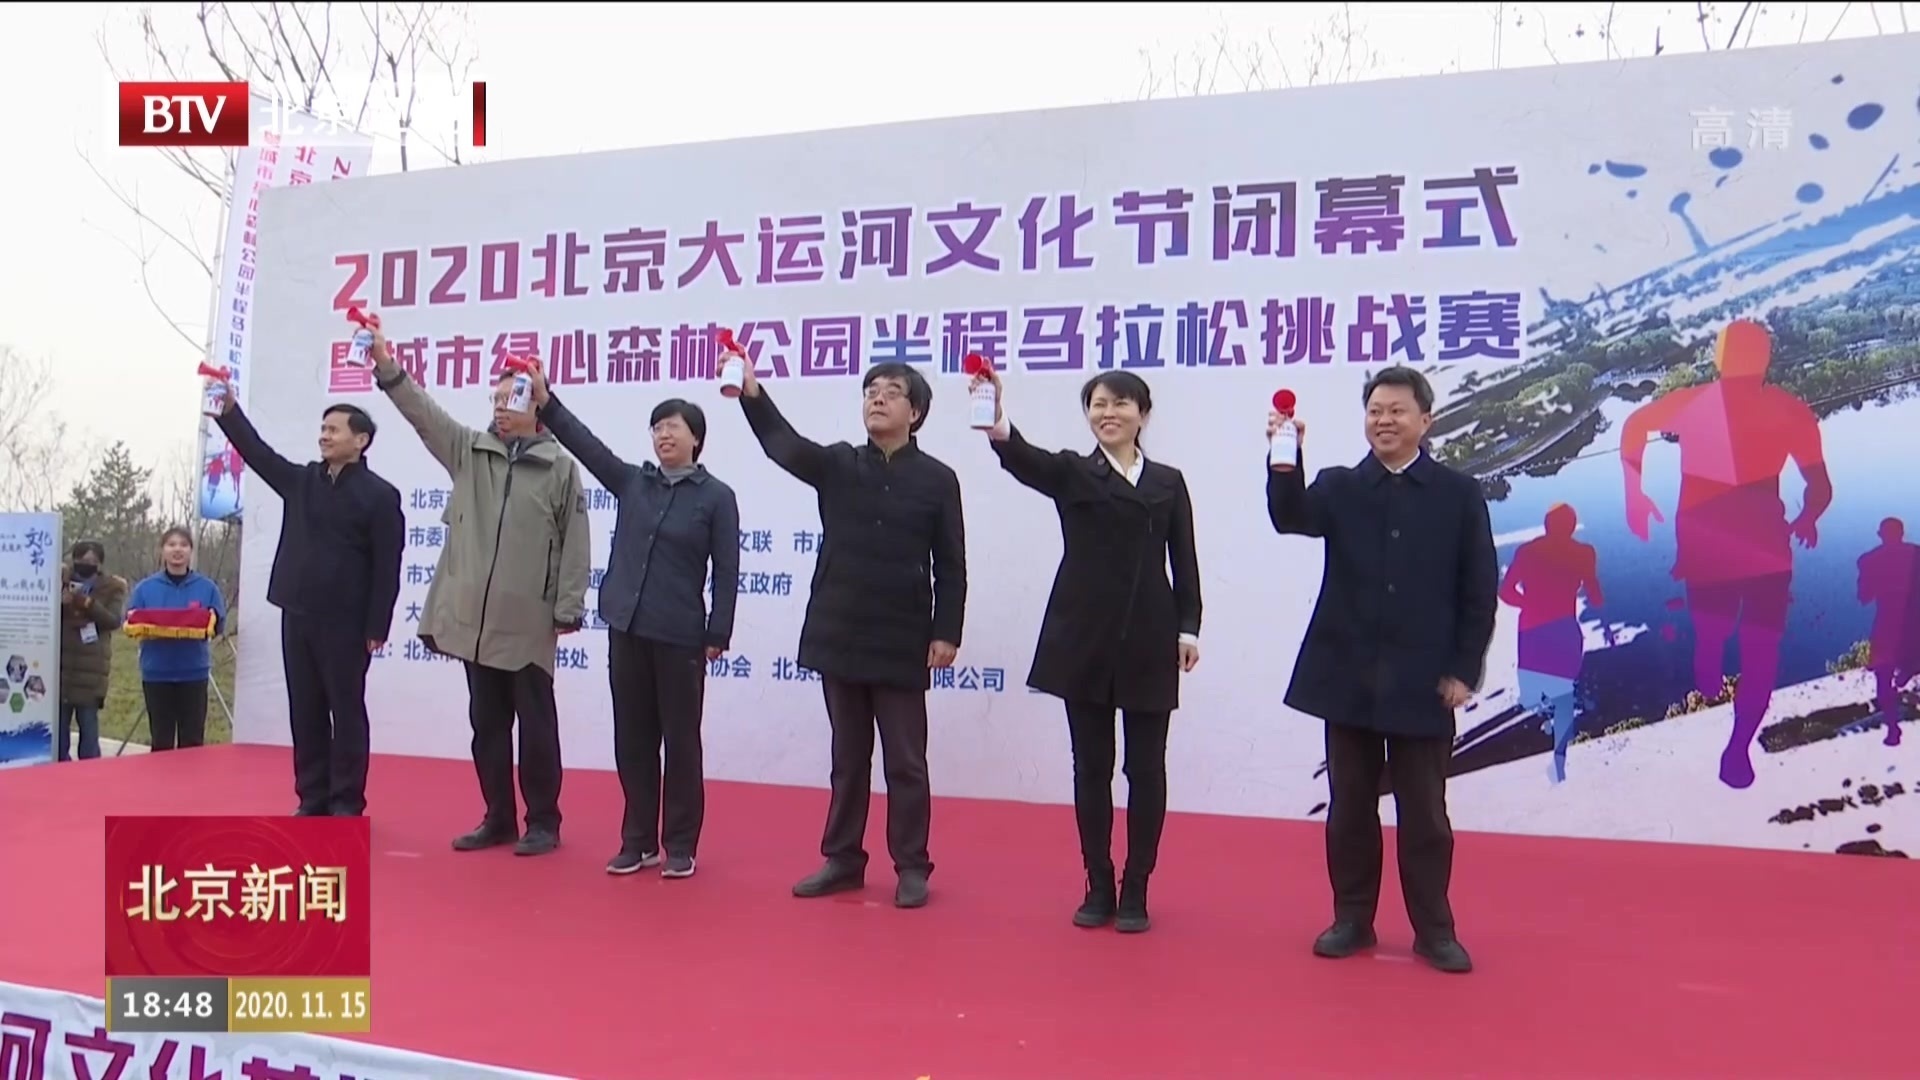 2020北京大运河文化节闭幕